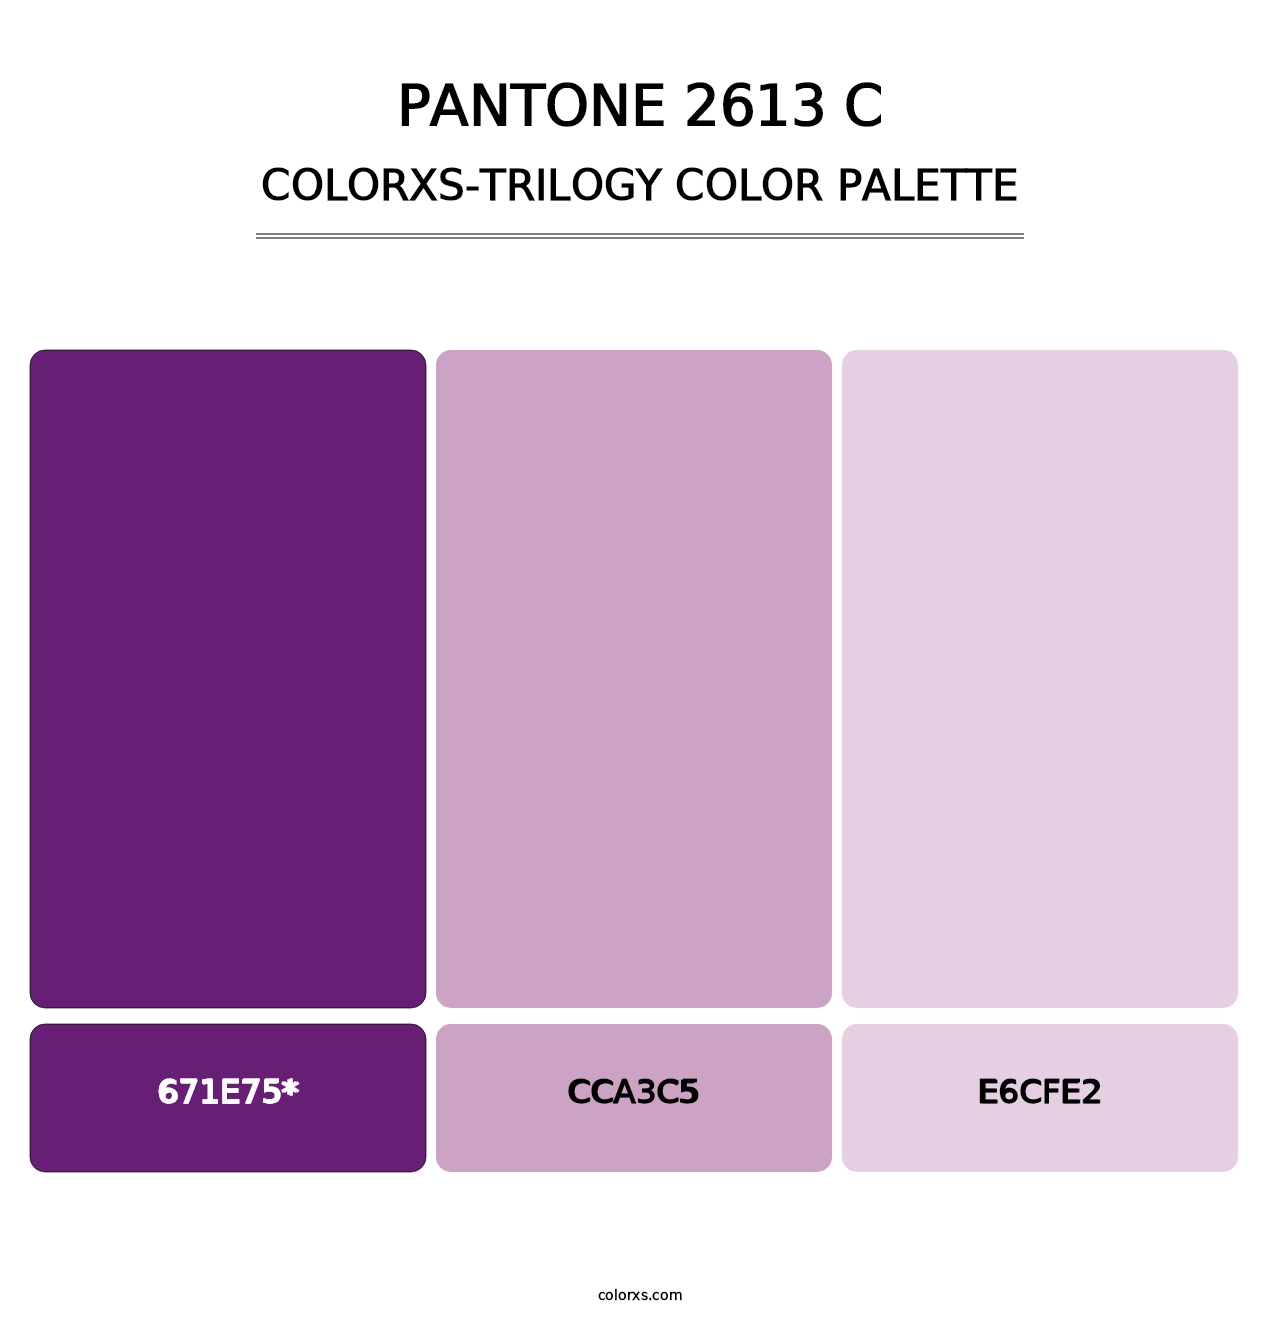 PANTONE 2613 C - Colorxs Trilogy Palette